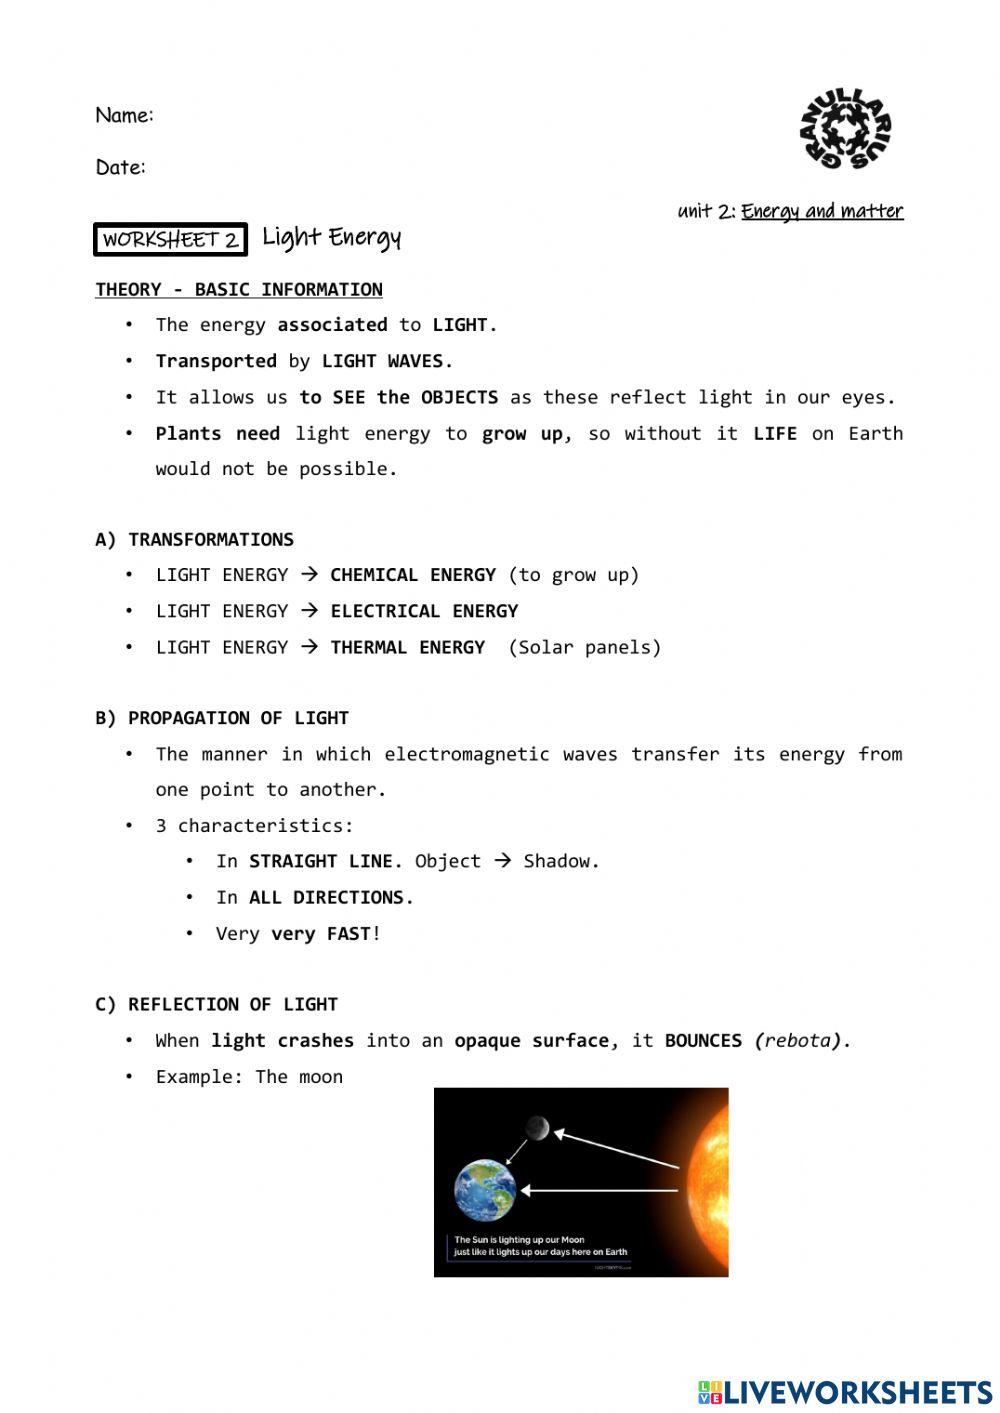 Worksheet 2: Light energy